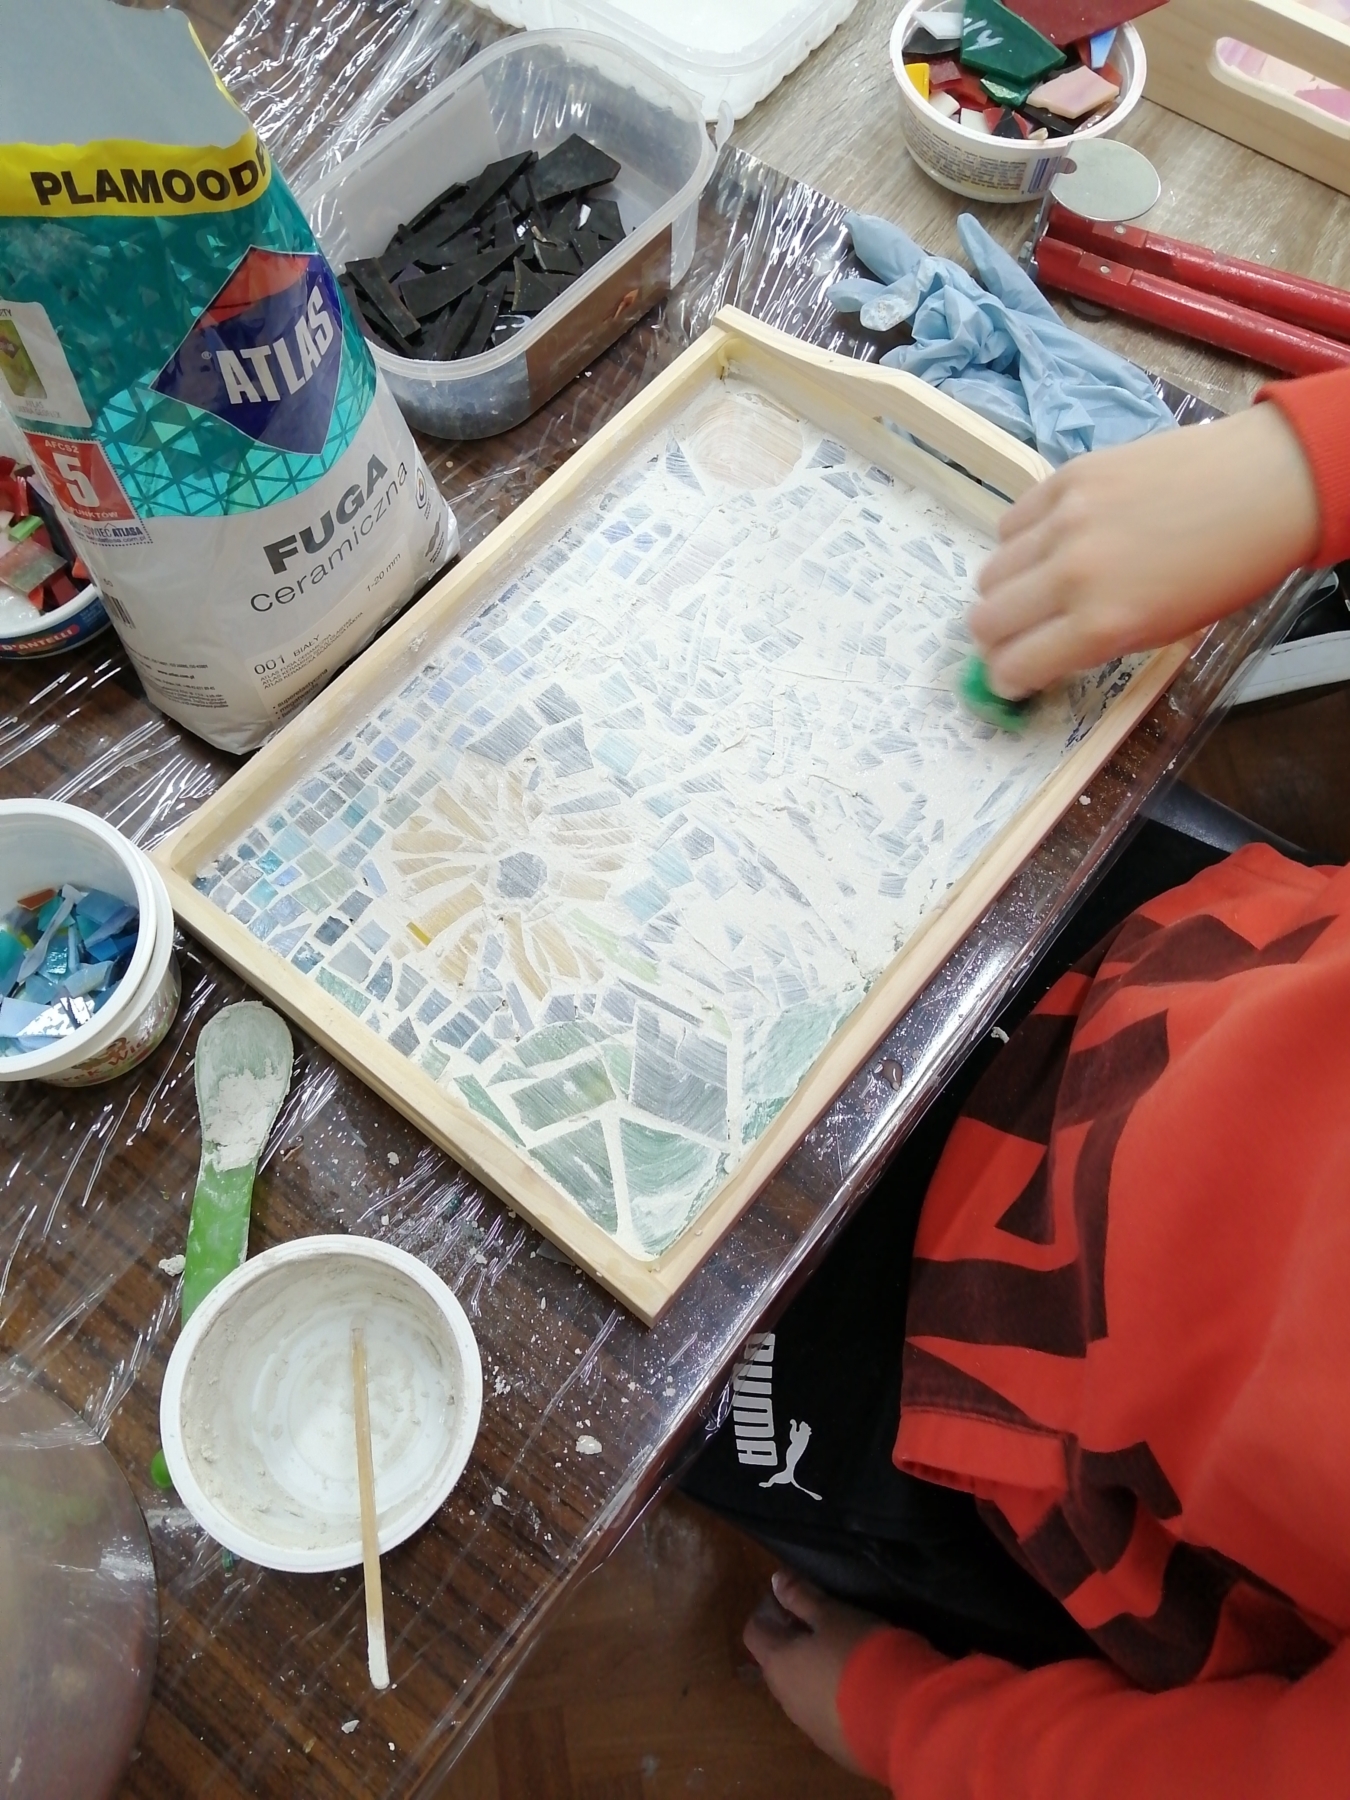 Dzieci tworzą mozaikowe kompozycje na tace